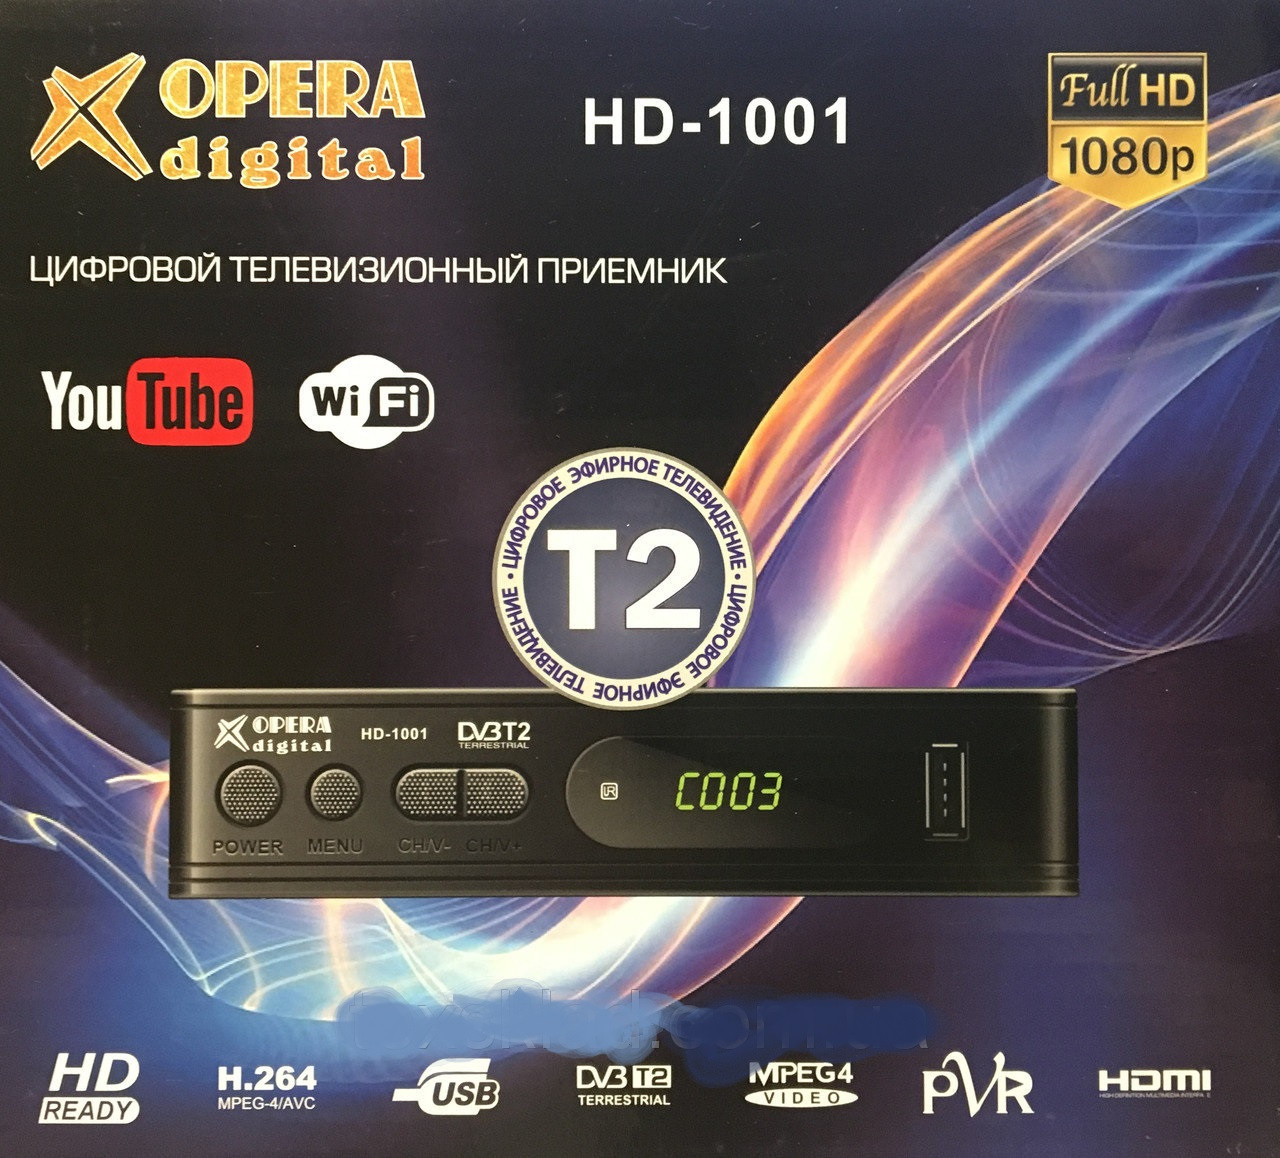 Тюнер Т2 OPERA DIGITAL HD-1001 DVB-T2, ТВ тюнер, цифрове телебачення, відмінний товар